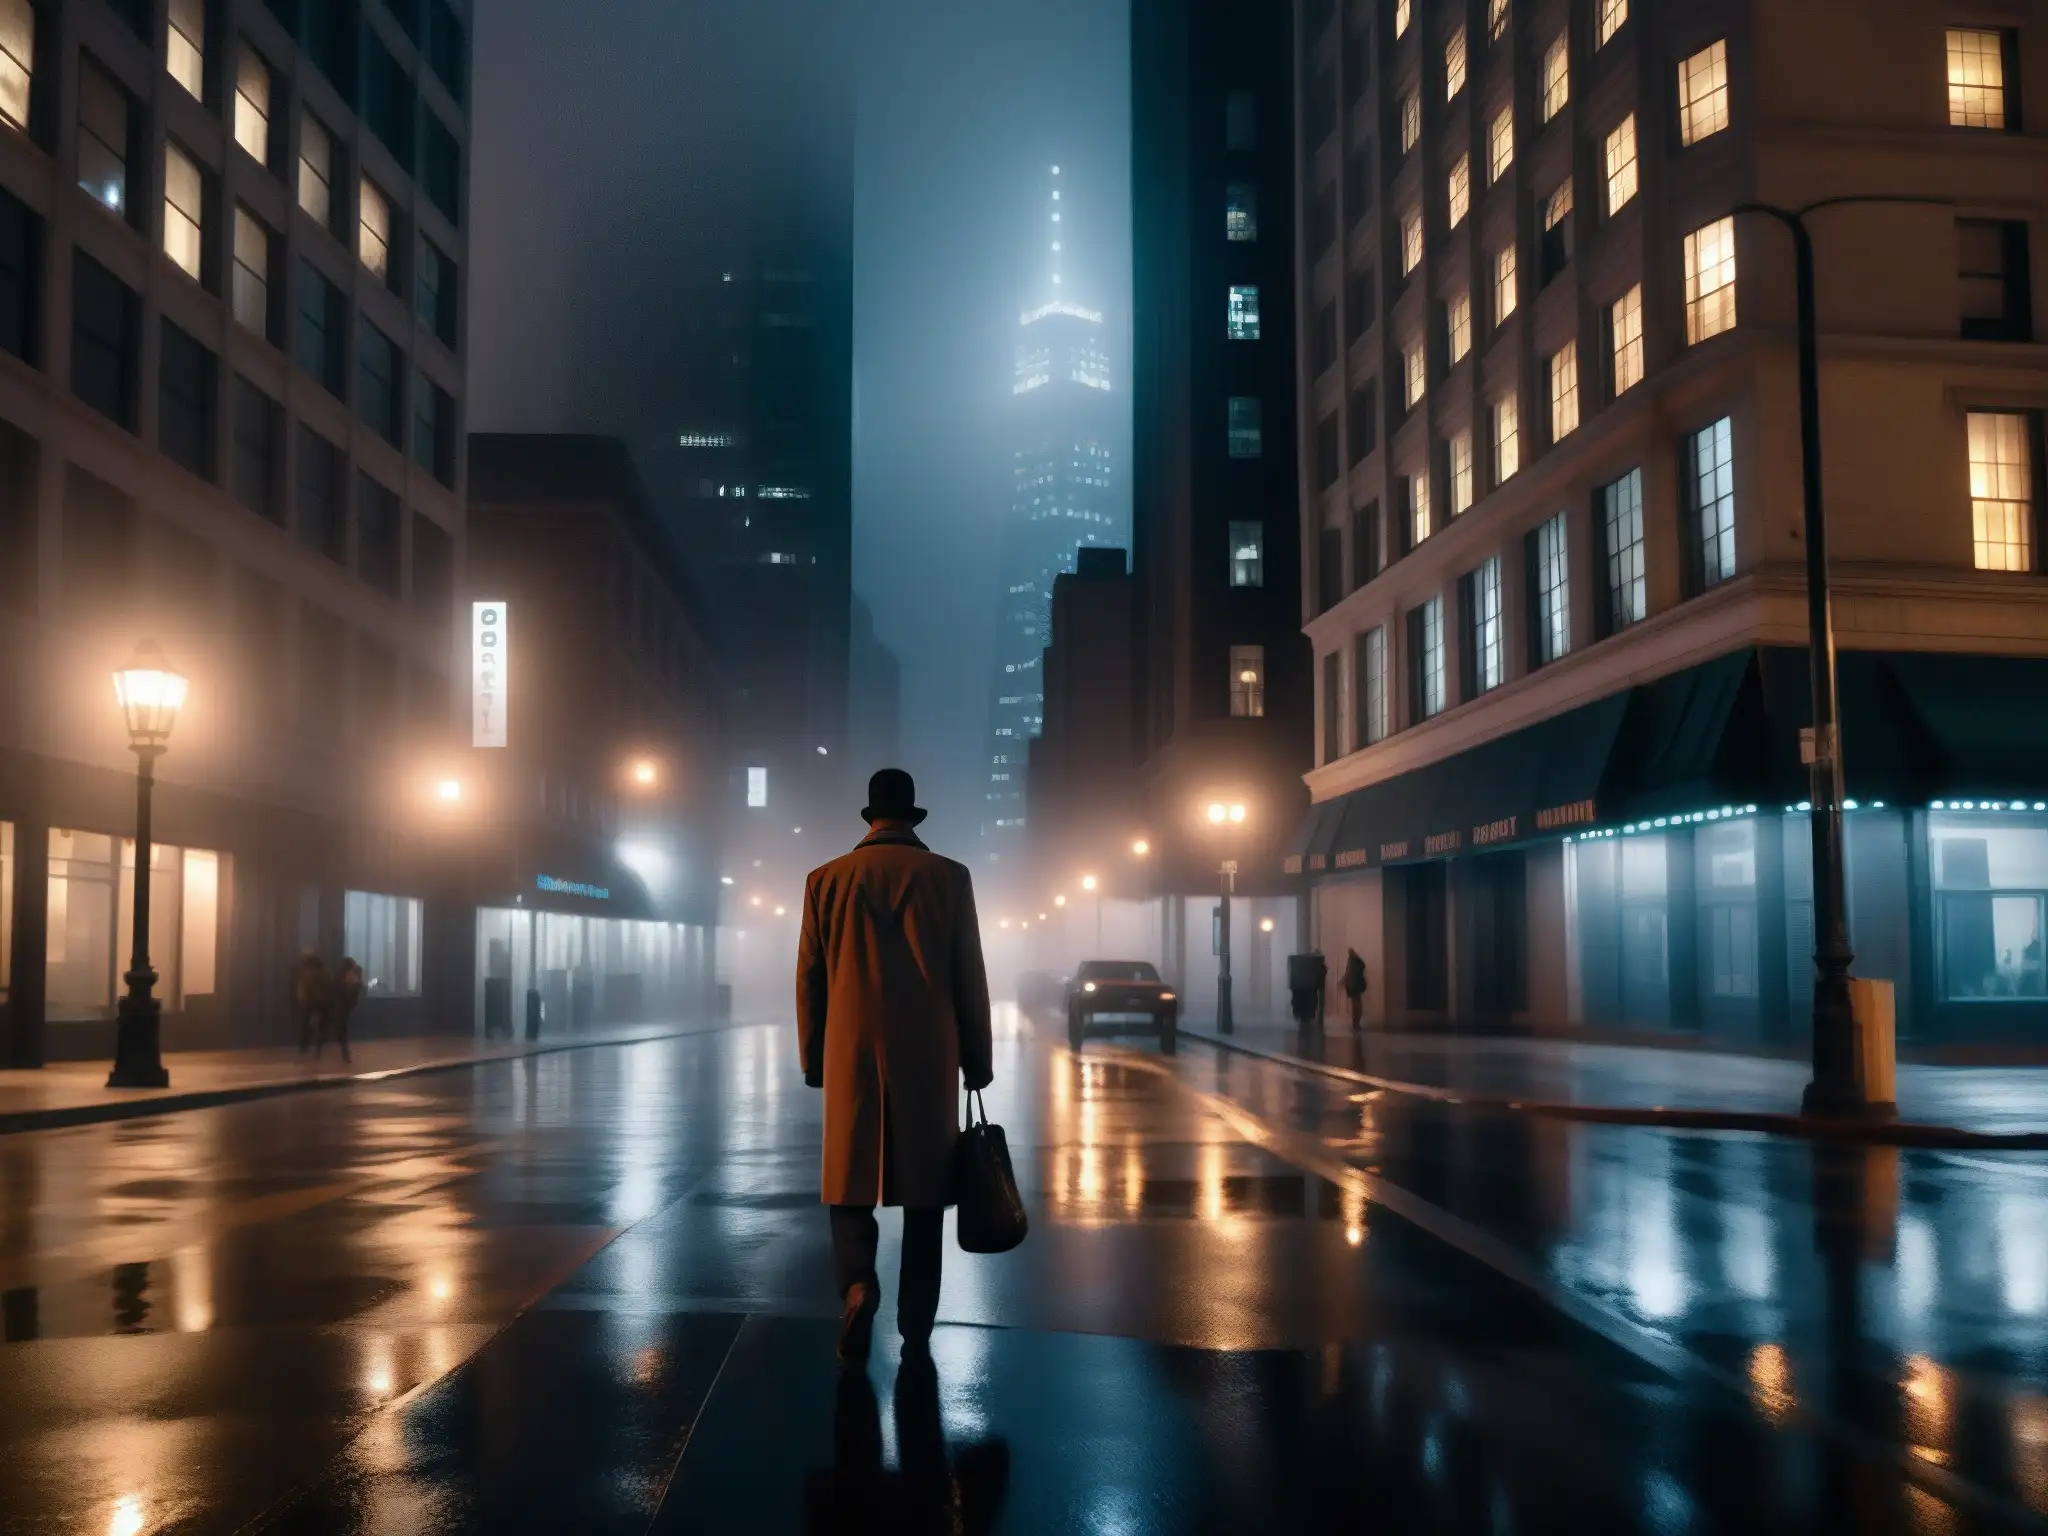 Escena nocturna en la ciudad con neblina alrededor de un rascacielos, iluminada por farola